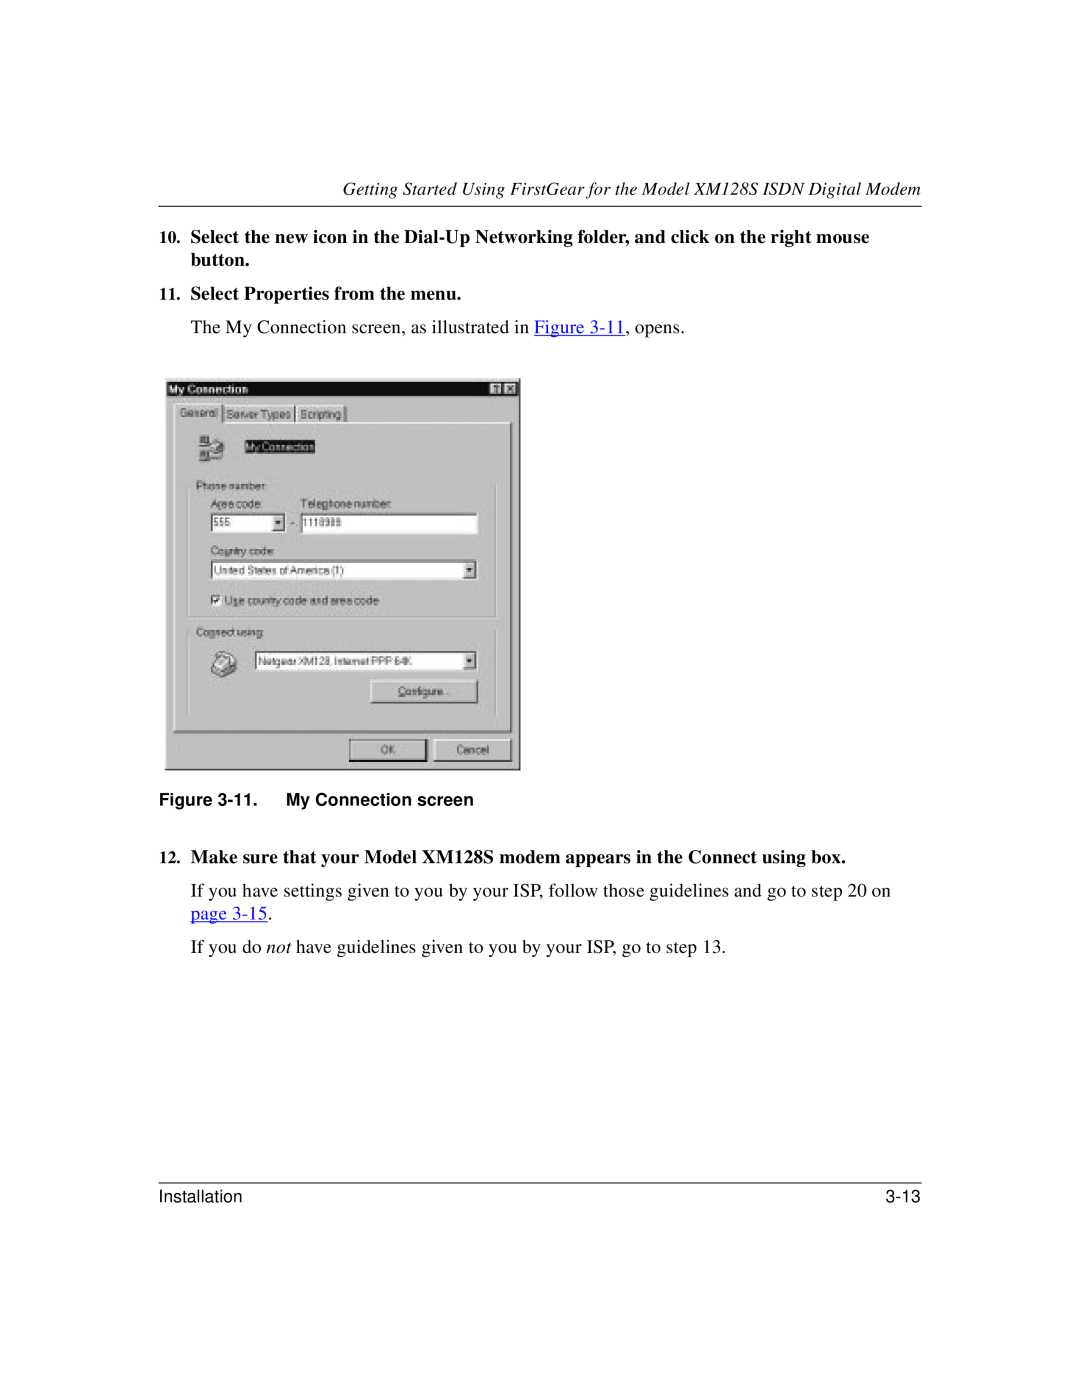 NETGEAR XM128S manual Select Properties from the menu 